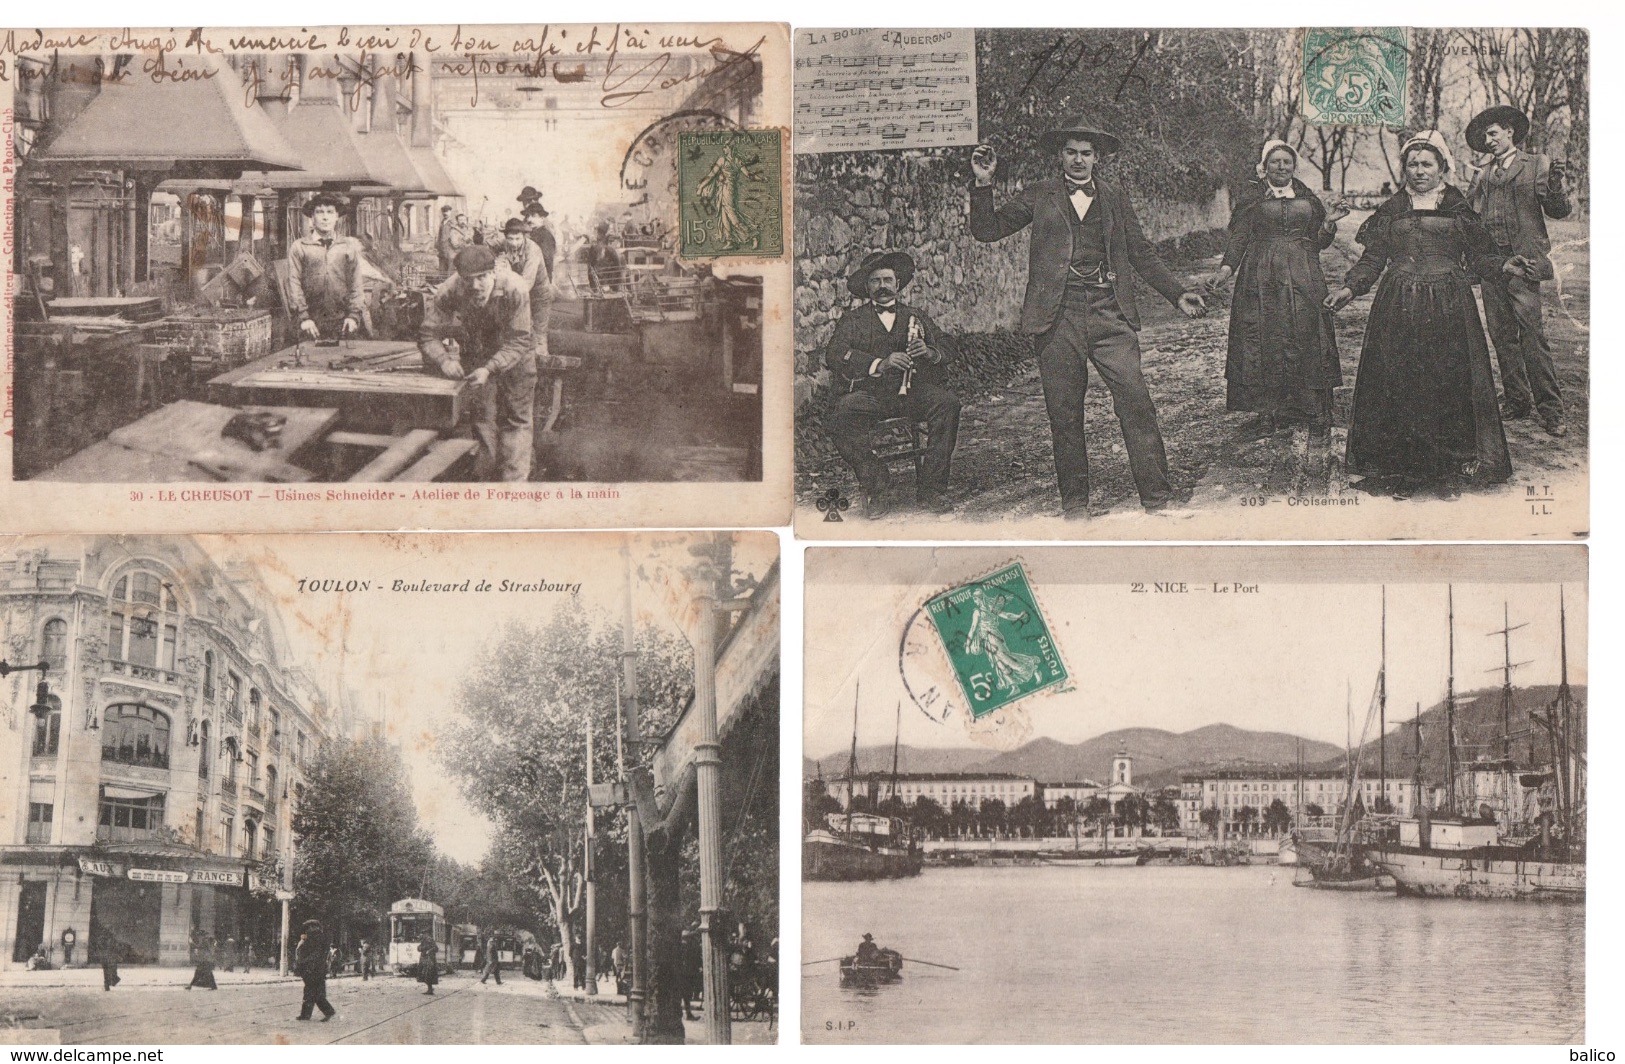 Lot de 100 cartes postales anciennes diverses variées - très très bon pour un revendeur réf, 144